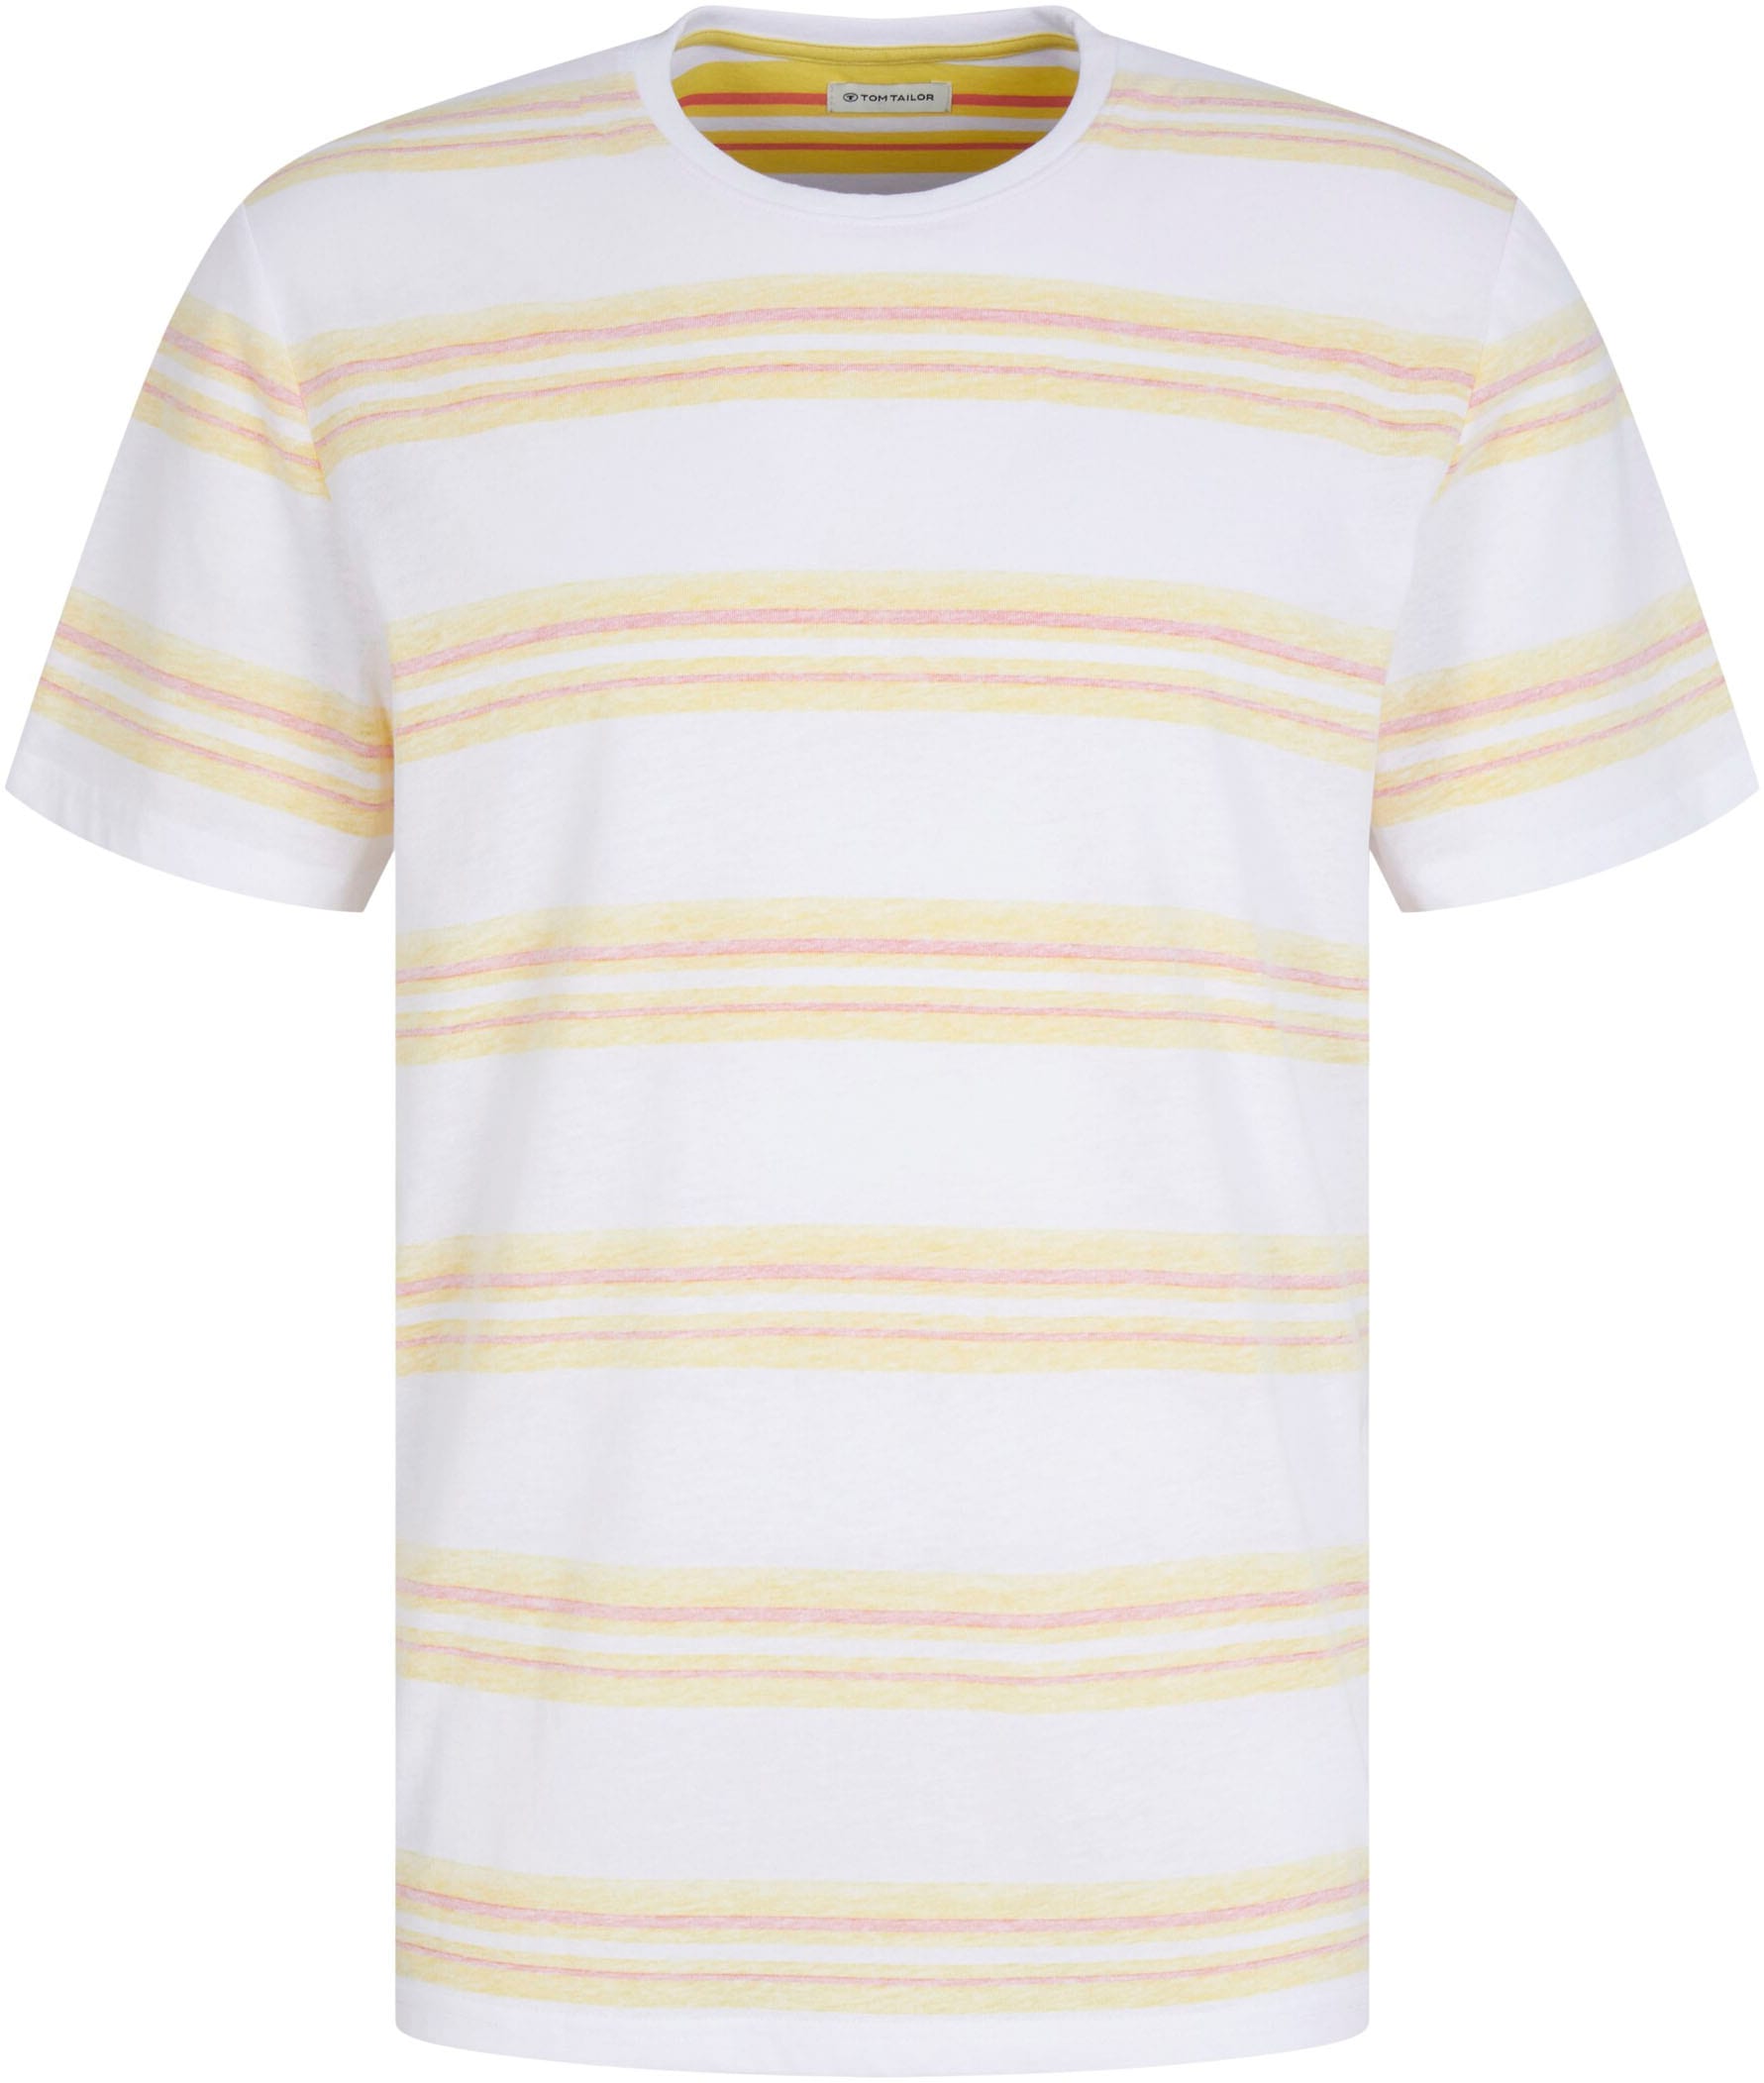 TOM TAILOR T-Shirt online kaufen bei OTTO